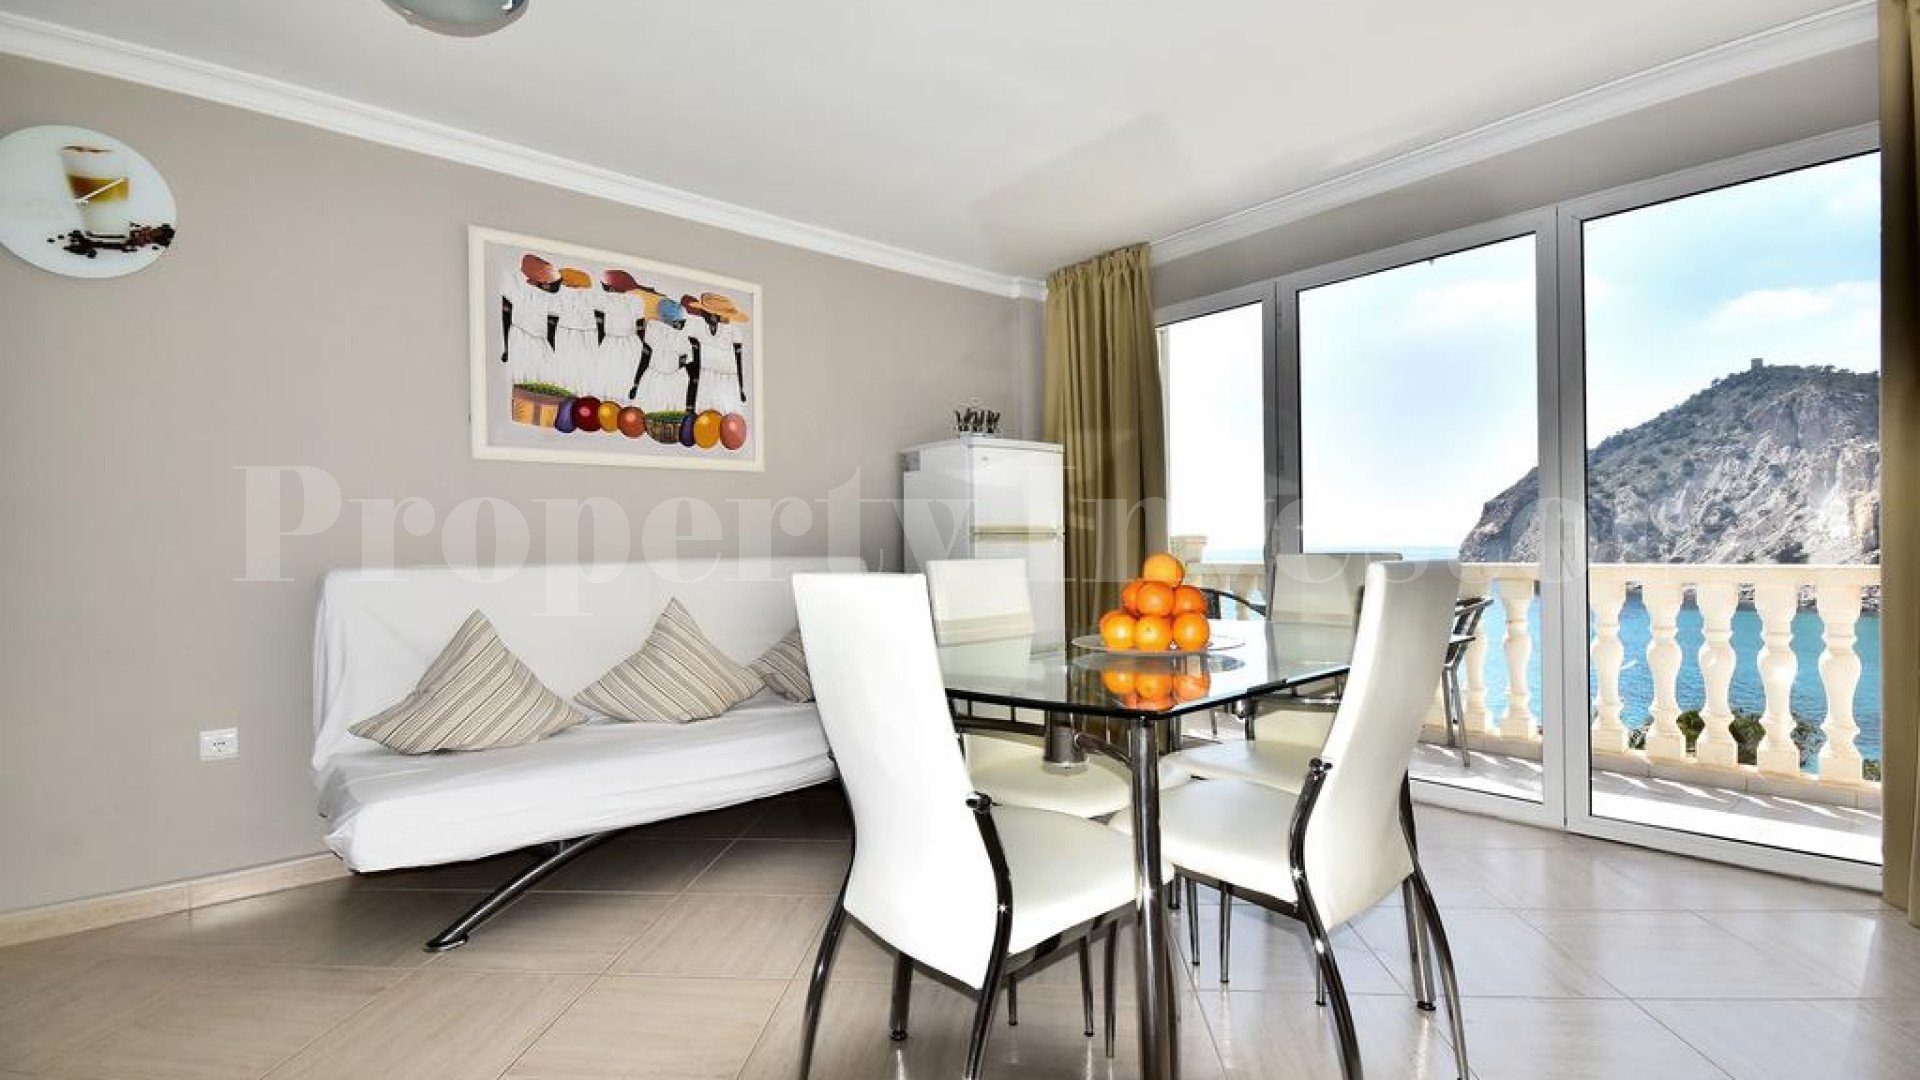 Стильный апарт-отель на 11 номеров с изумительным панорамным видом на море в Бенидорме, Испания